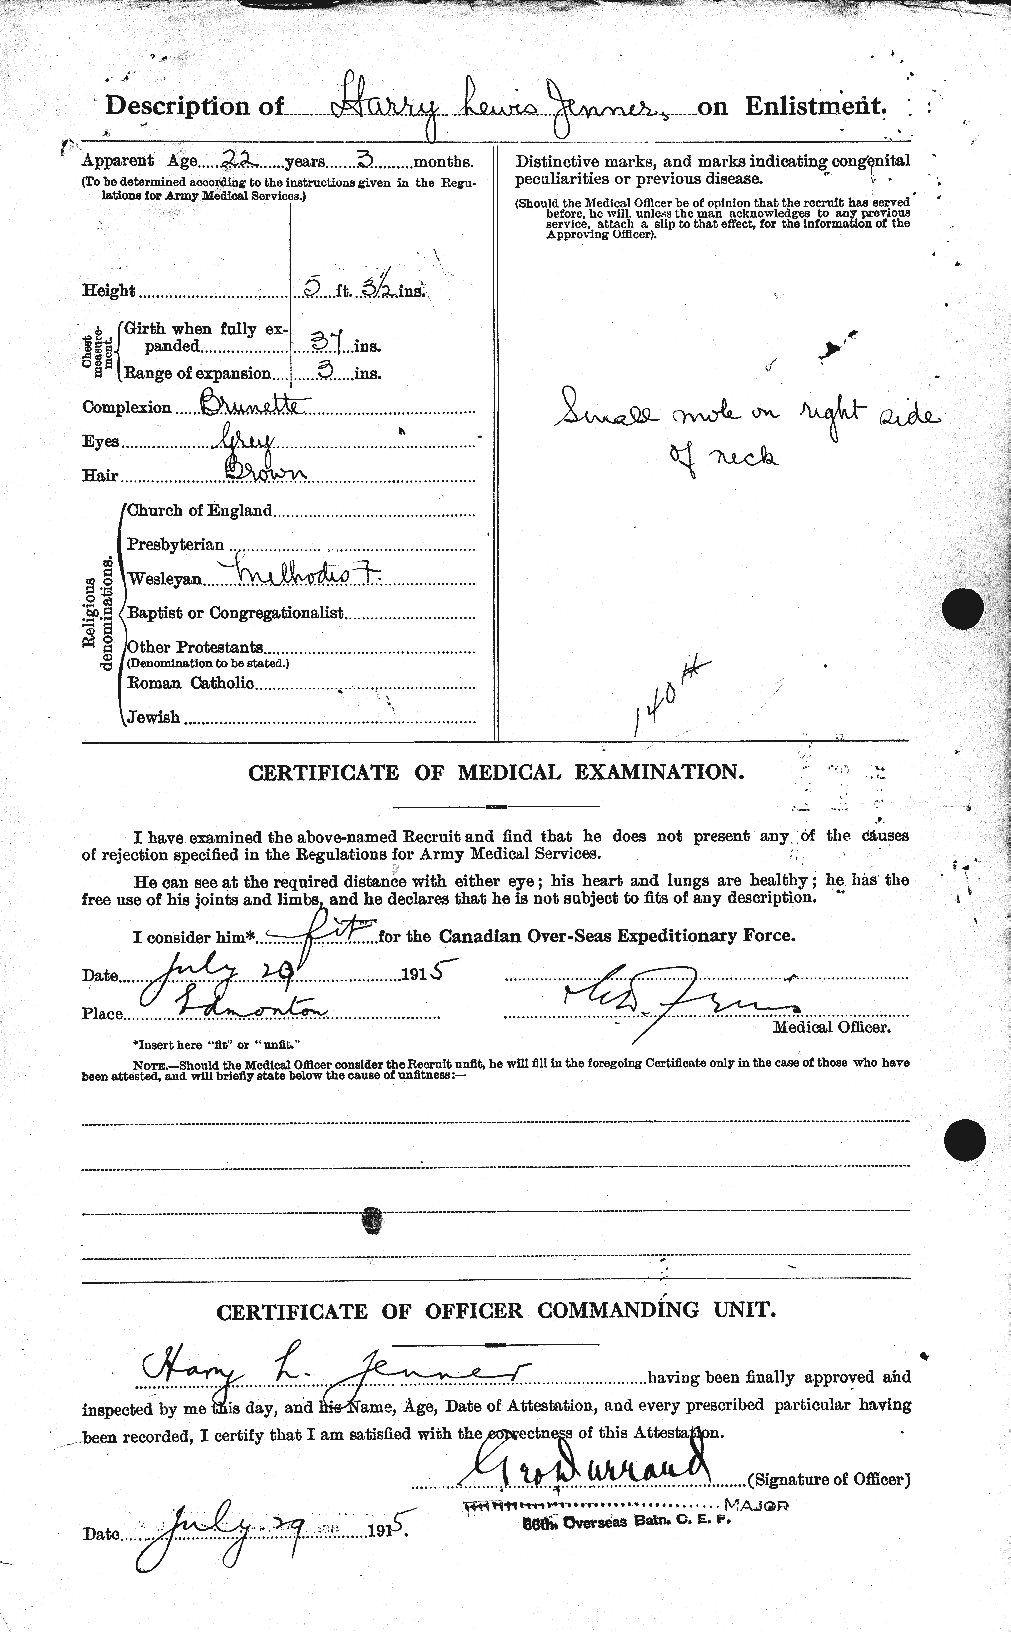 Dossiers du Personnel de la Première Guerre mondiale - CEC 418165b